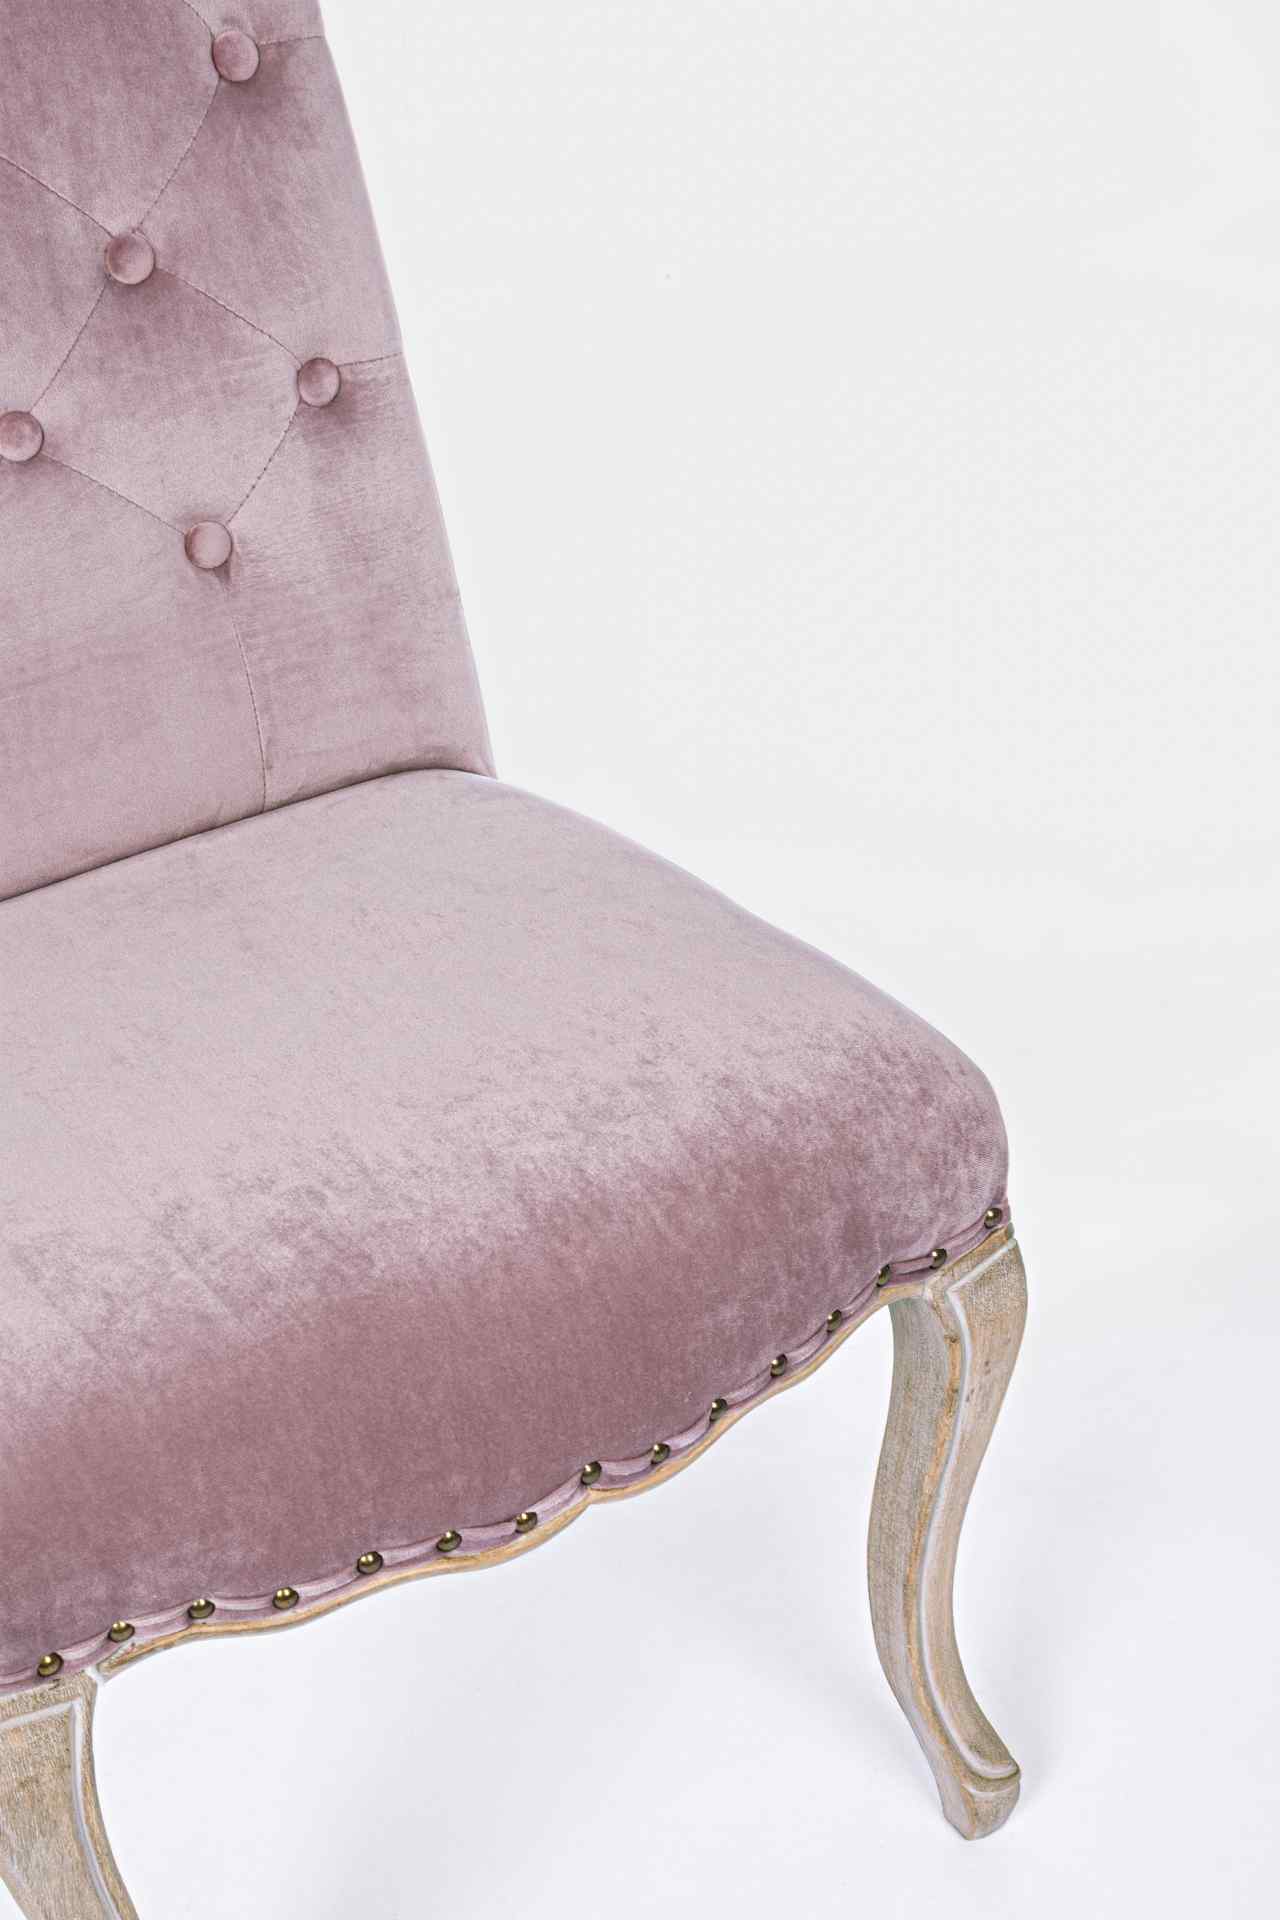 Der Esszimmerstuhl Diva überzeugt mit seinem klassischem Design. Gefertigt wurde der Stuhl aus einem Stoff-Bezug, welcher einen Rosa Farbton besitzt und in einer Samt-Optik ist. Das Gestell ist aus Holz und ist natürlich gehalten. Die Sitzhöhe beträgt 48 